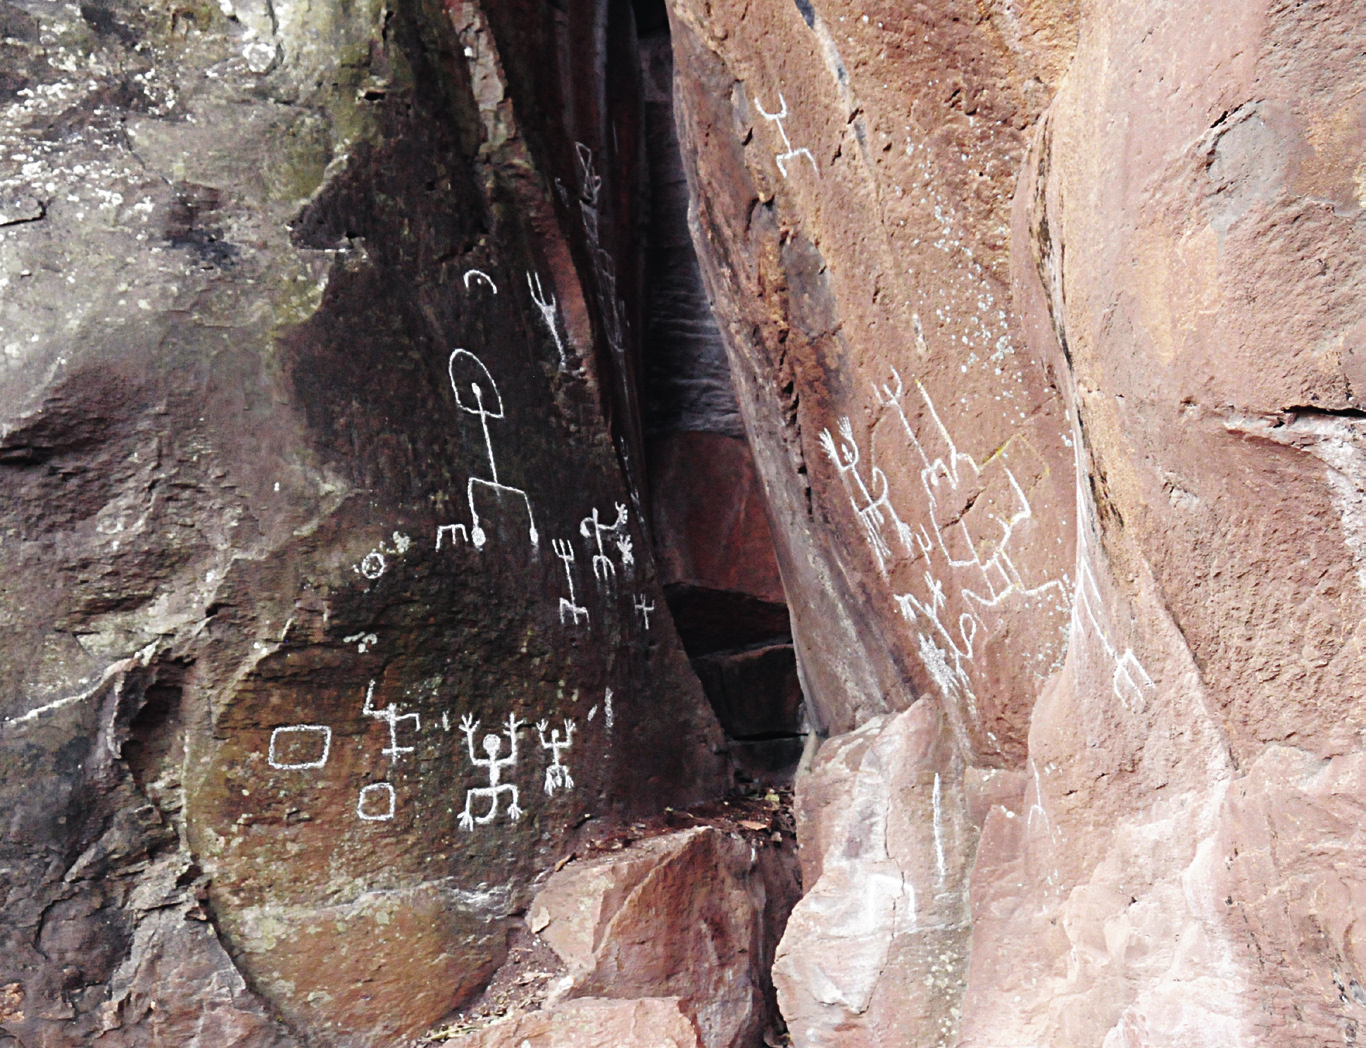 figura 17 adoratorio solar pie en la piedra más grande del lugar, indicando el lugar en donde un chamán llevaba a cabo sus ritos de súplicas al dios Sol para pedir el bien de la comunidad indígena